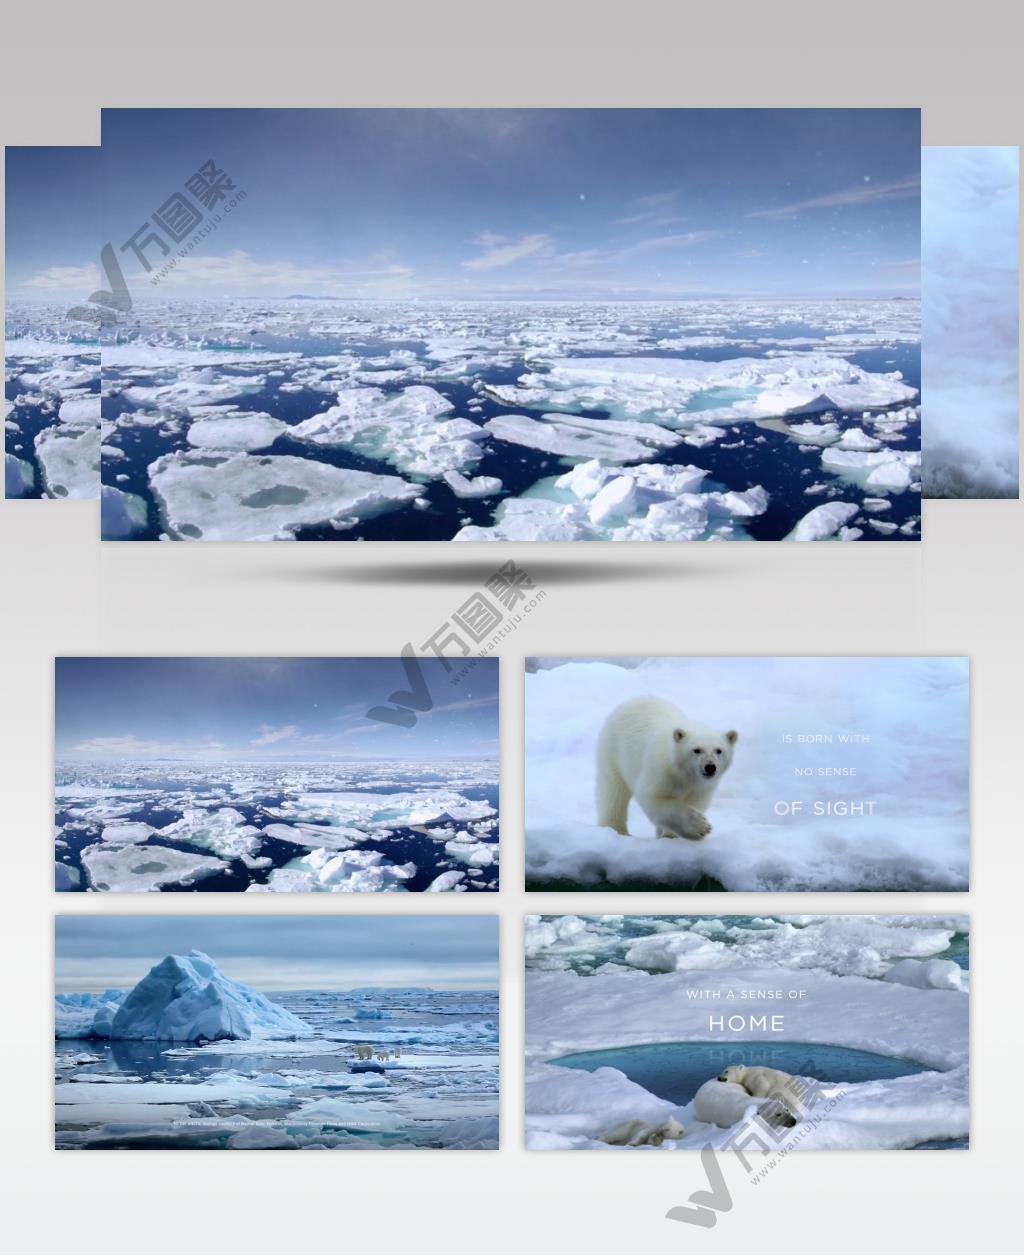 Coca-Cola环保广告 北极熊篇.1080p 欧美高清广告视频